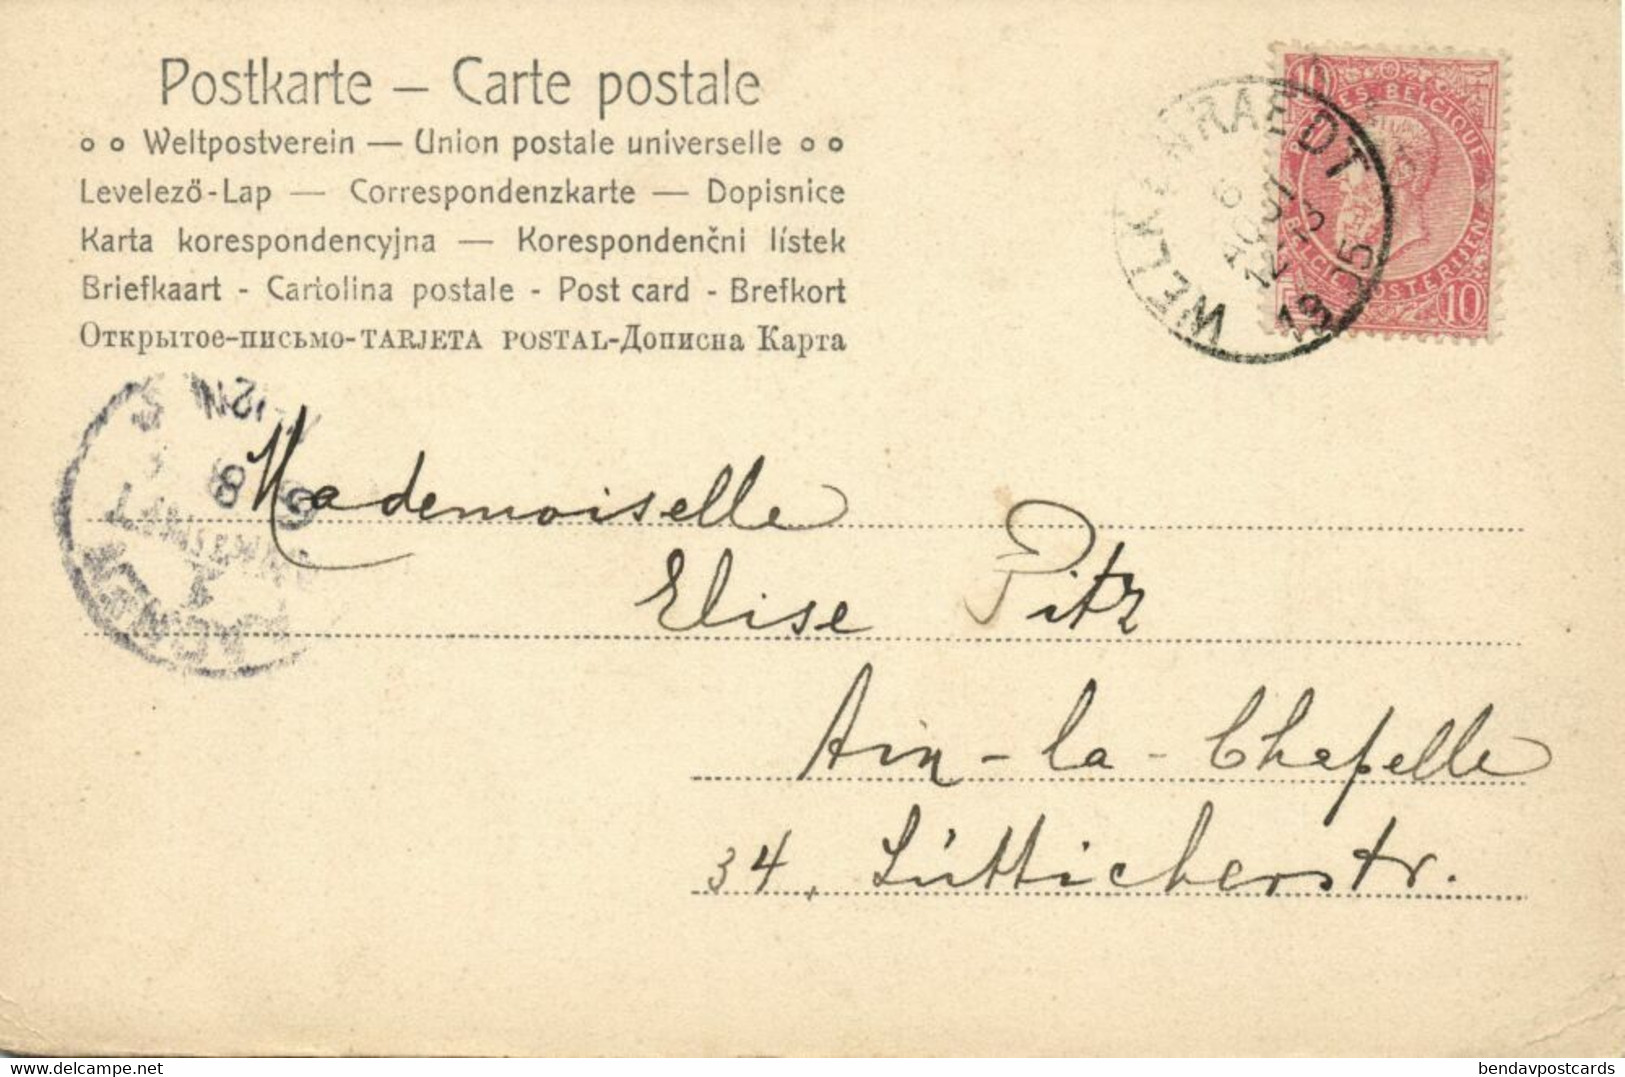 Belgium, WELKENRAEDT, Rue De L'Eglise, Bike (1905) Postcard - Welkenraedt